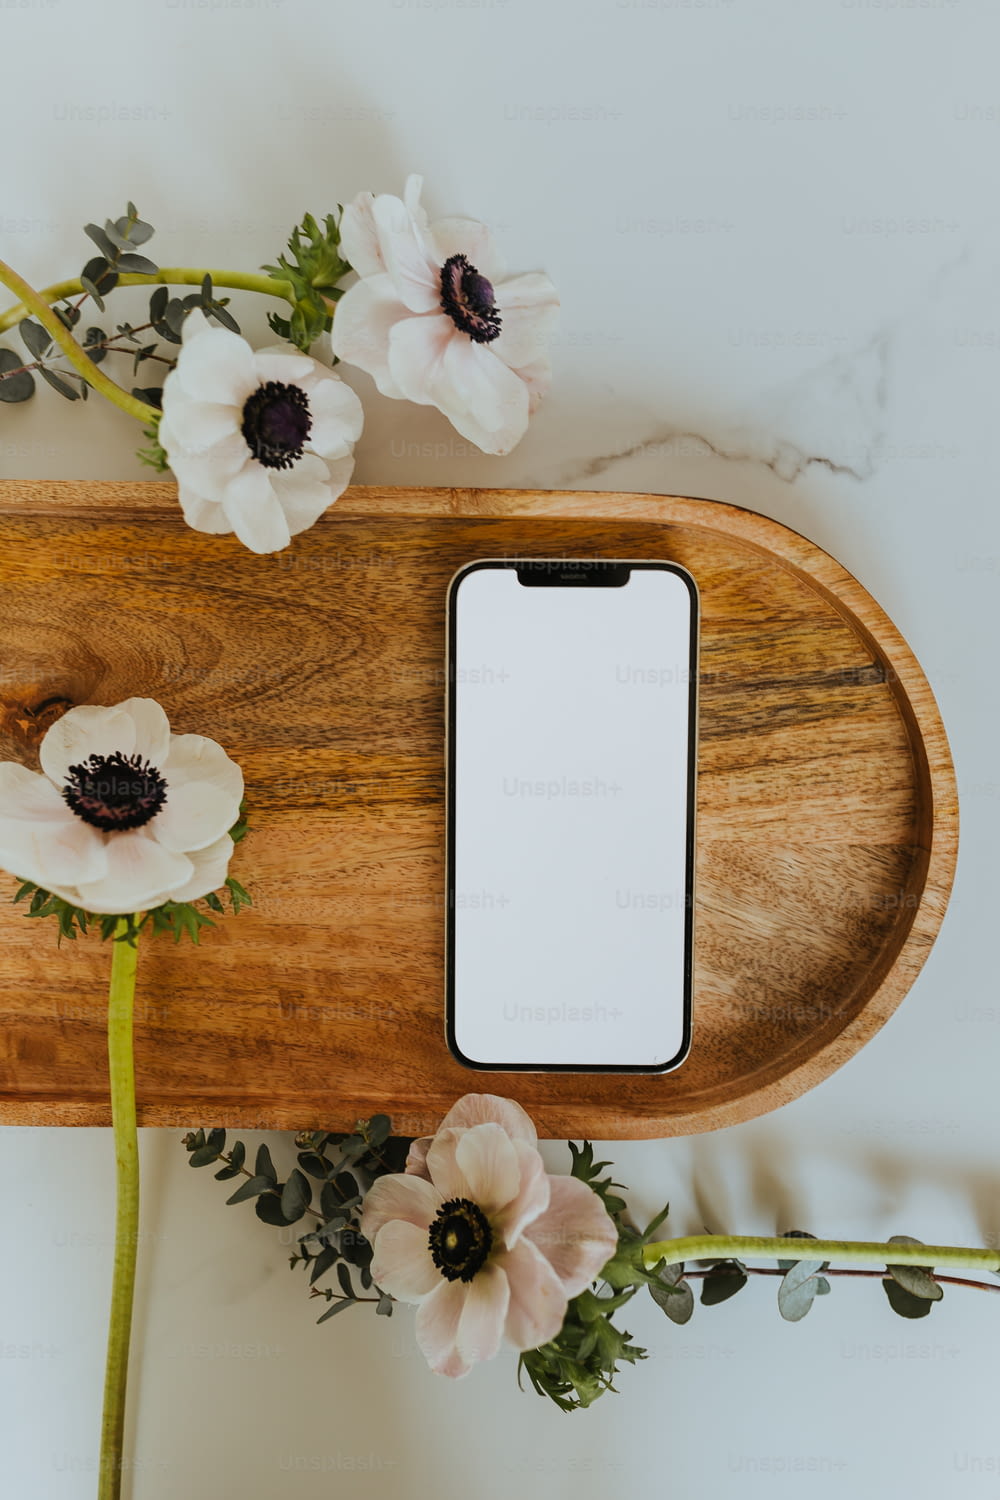 un vassoio di legno con fiori e un telefono cellulare su di esso